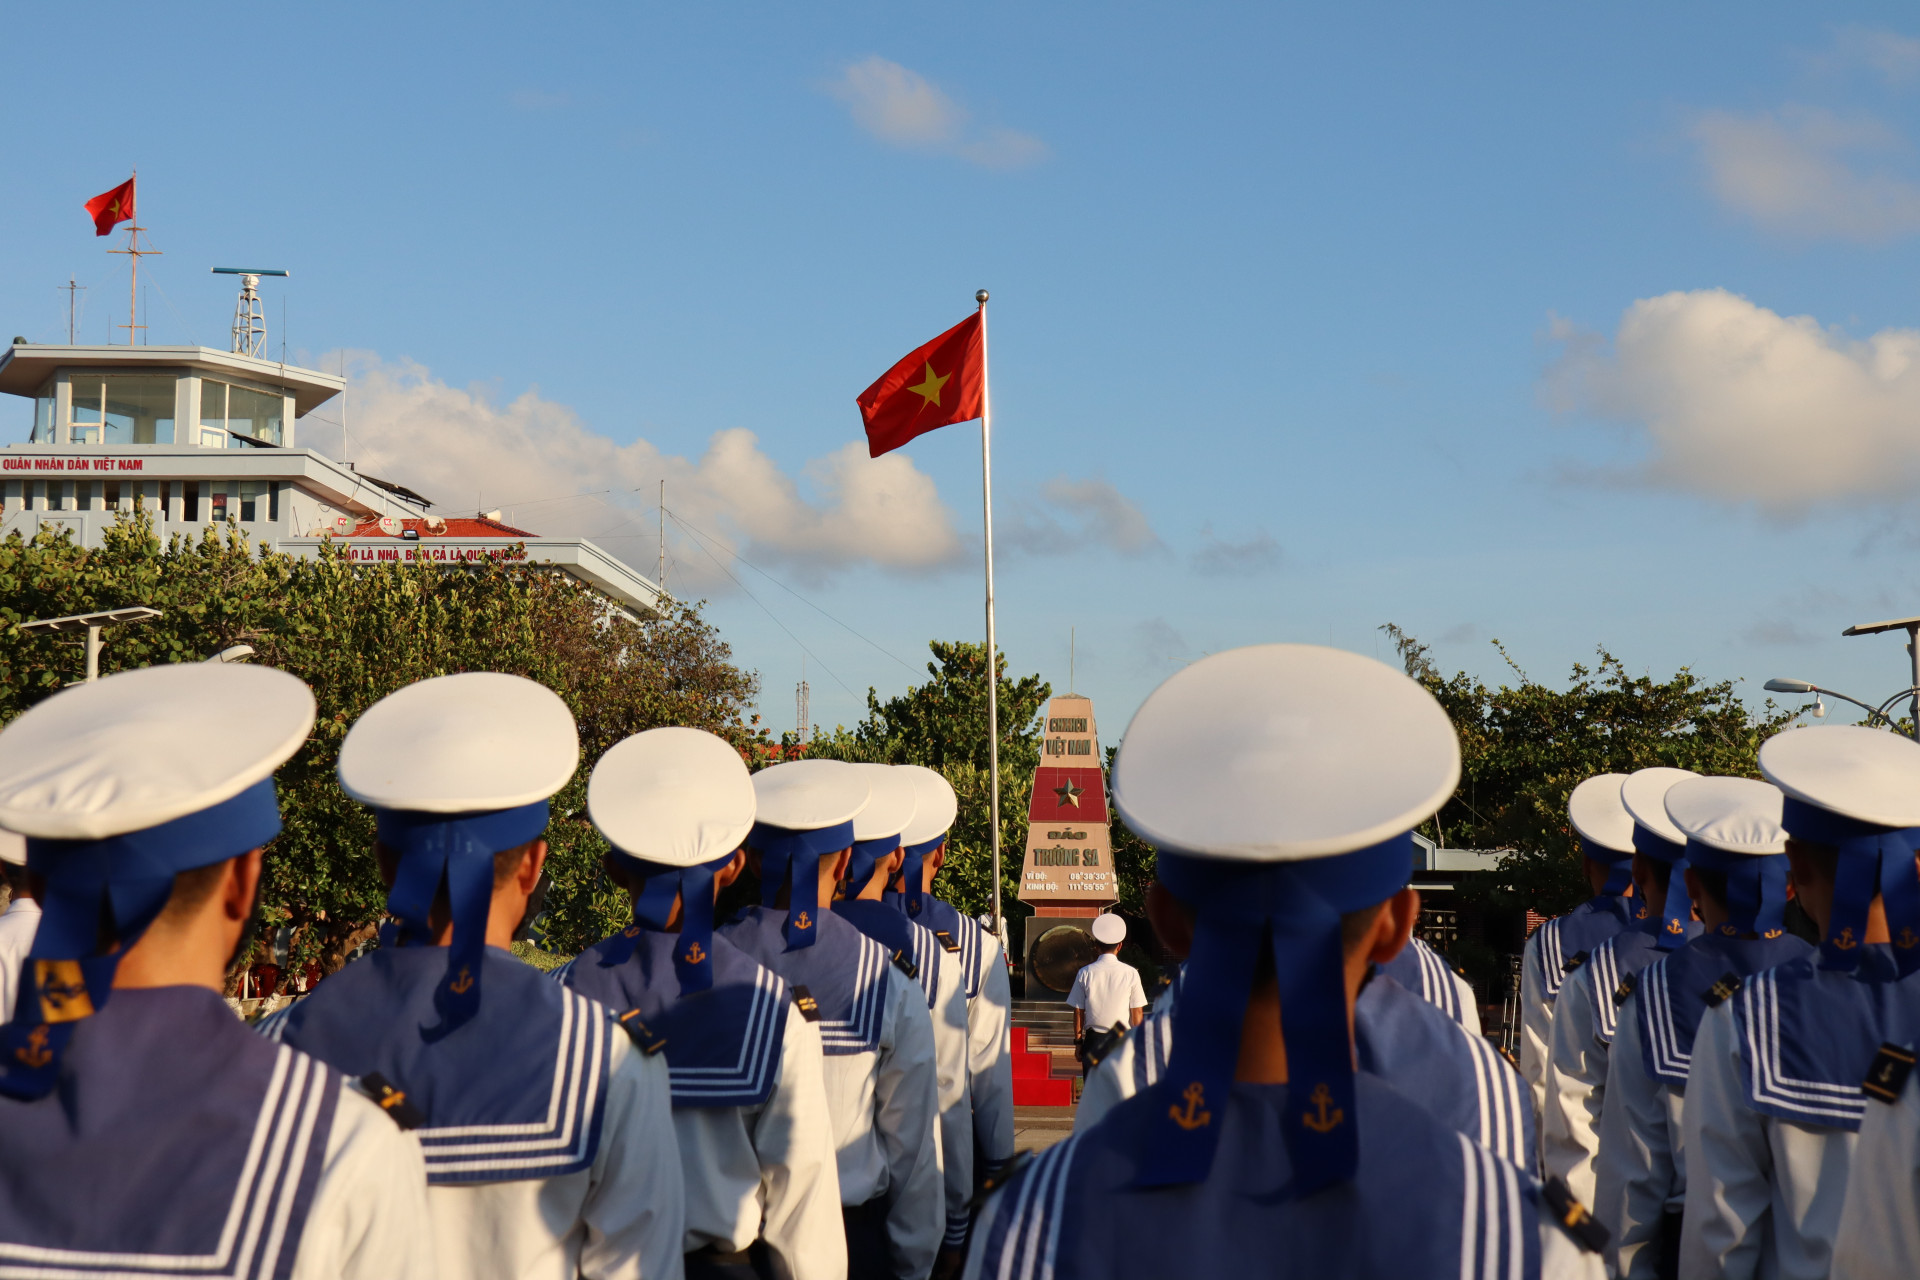 Quốc kỳ tung bay trên đảo Trường Sa đầy kiêu hãnh, oai hùng
